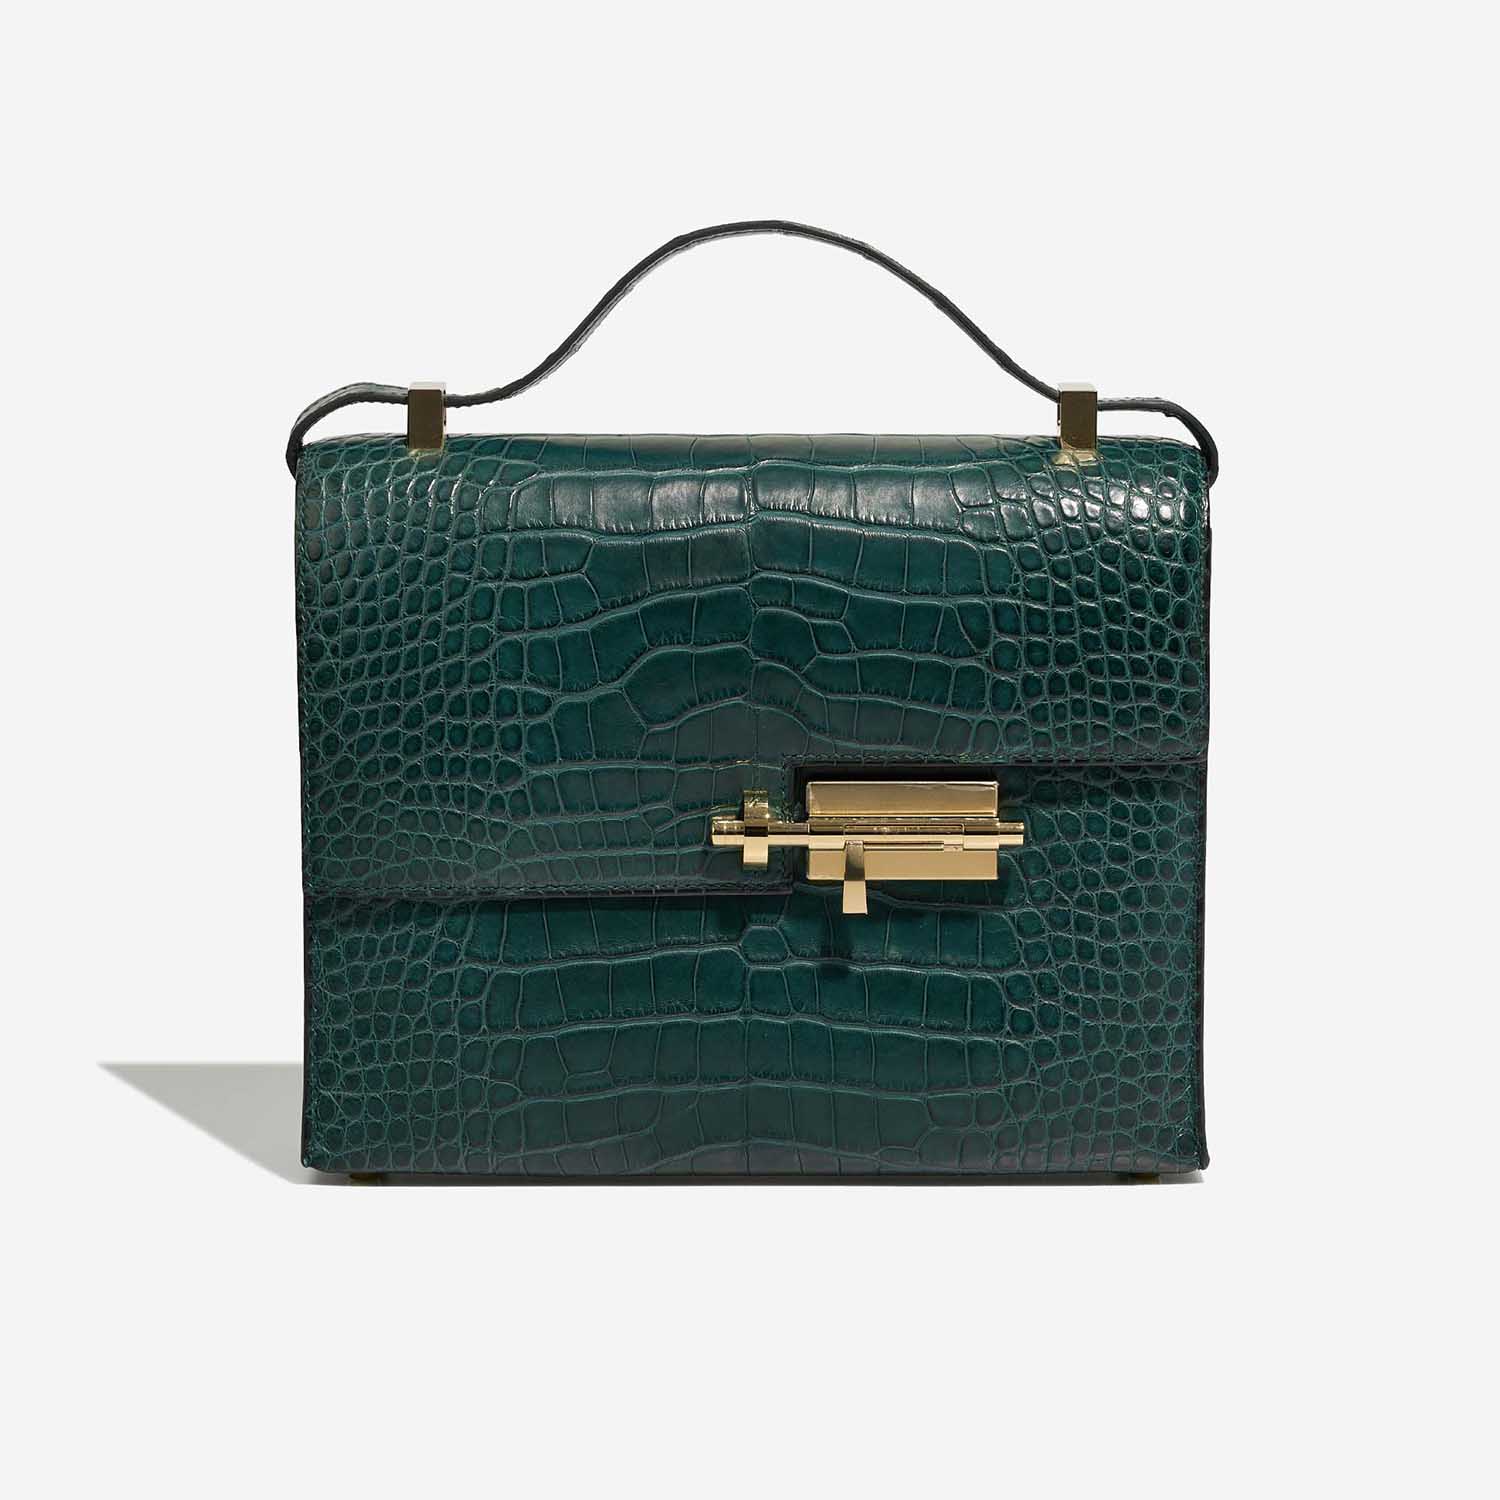 Sac Hermès d'occasion Verrou 23 Alligator Mat Vert Malachite | Vendez votre sac de créateur sur Saclab.com